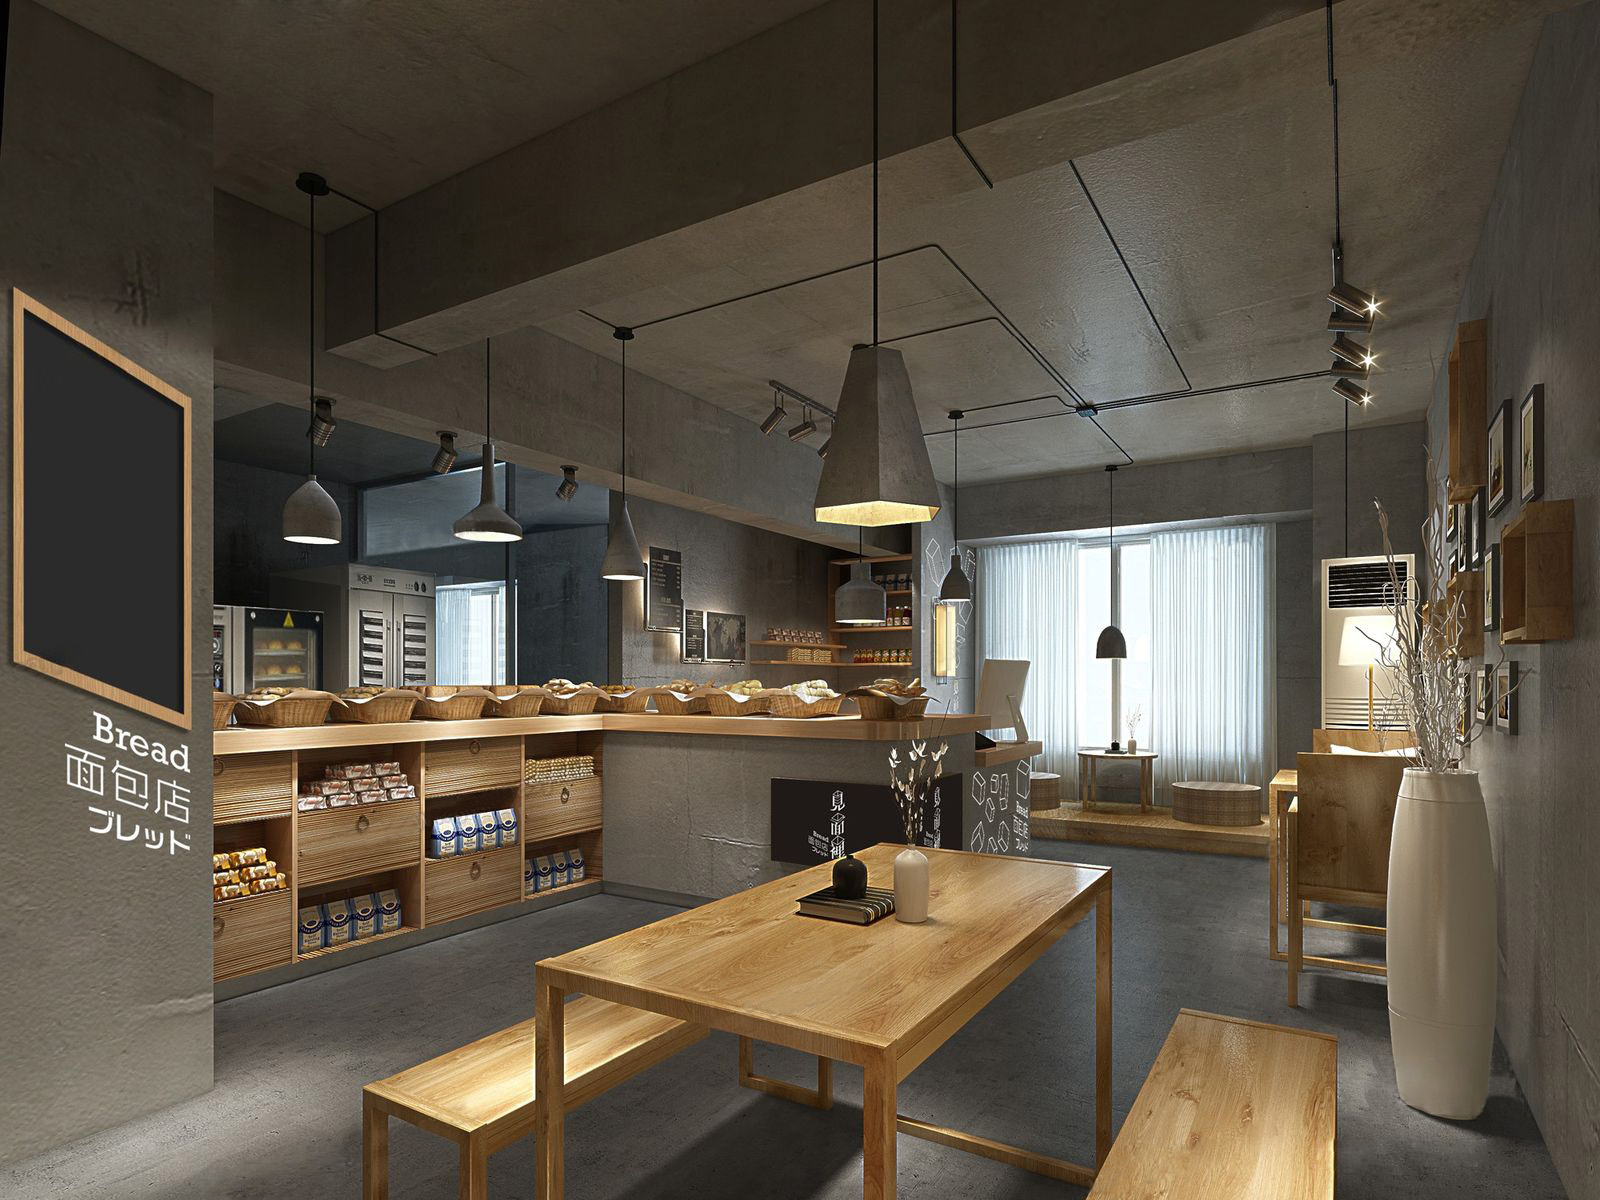 3dmax模型 中西餐厅咖啡厅茶楼店面loft工业风格3d室内模型素材 3D模型-第10张